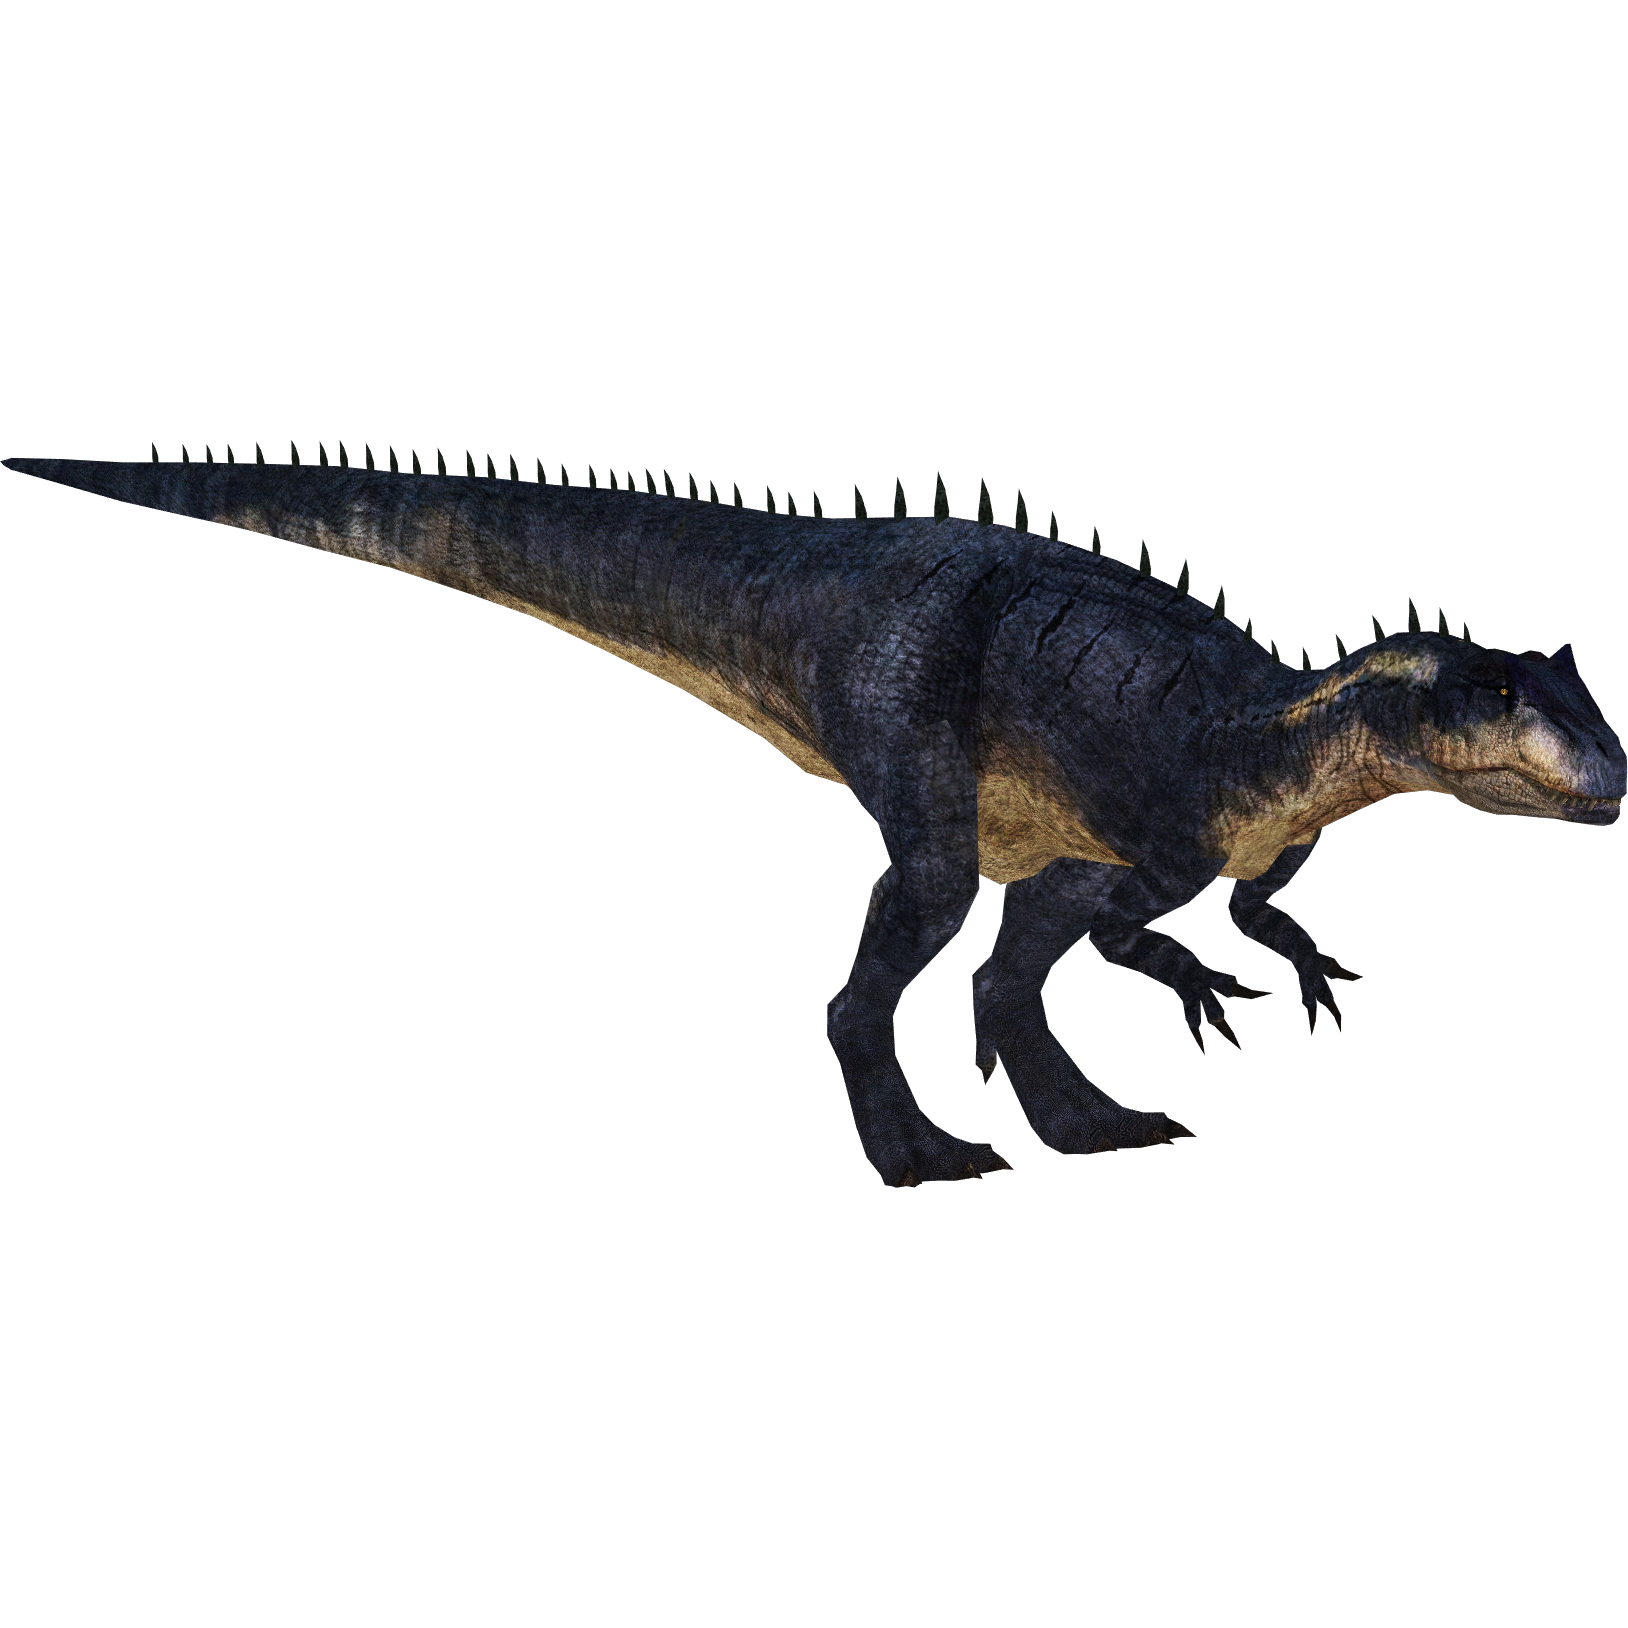 Bearded Saurophaganax, Dino Run Wiki